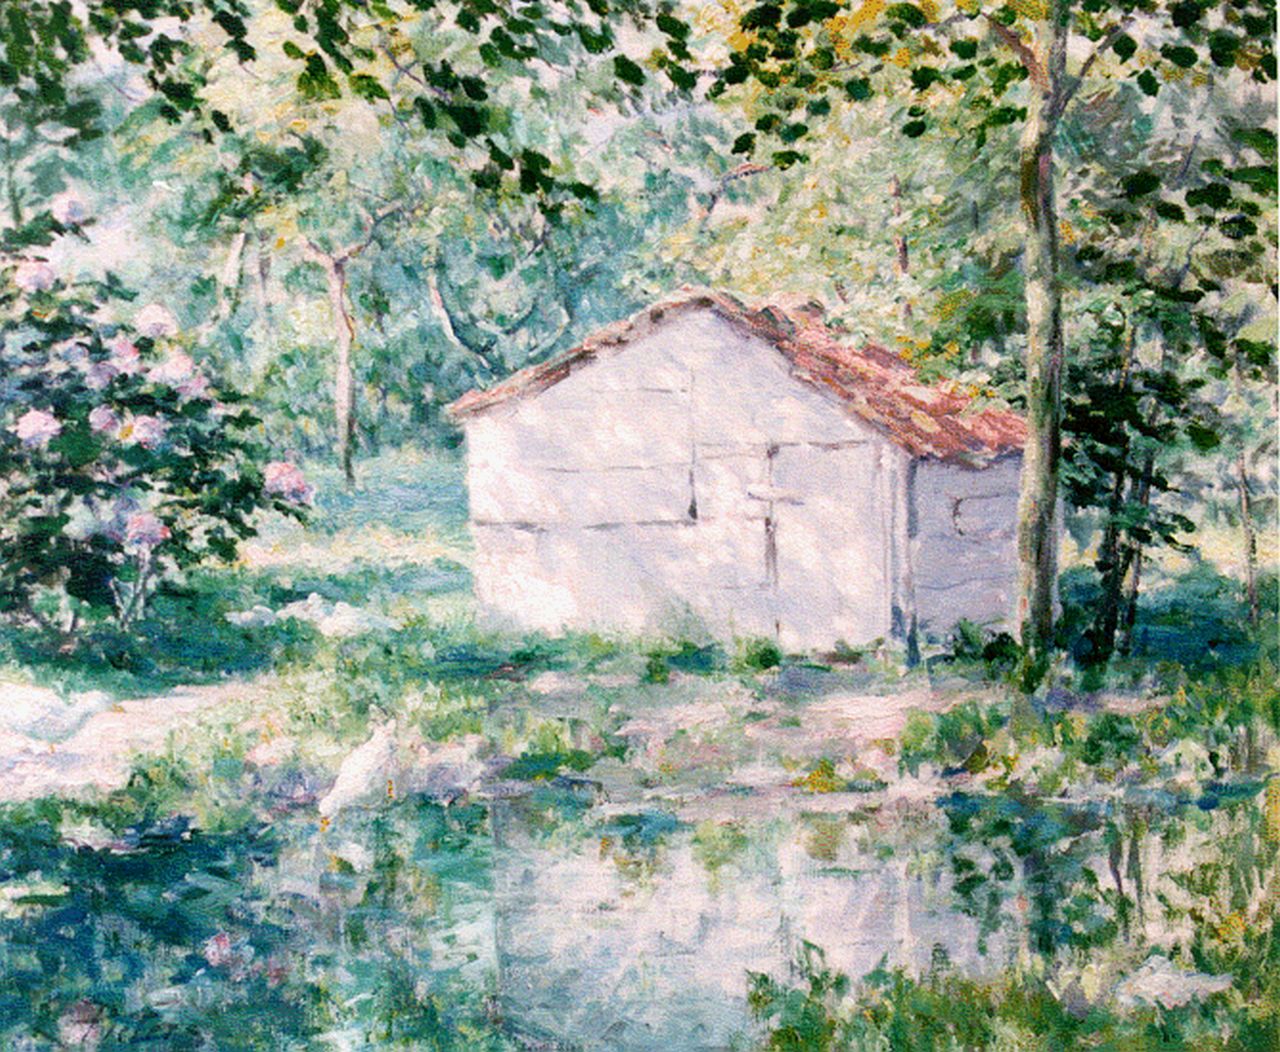 Pieters E.  | Evert Pieters, Schuurtje in het bos, oil on canvas 62.5 x 75.0 cm, gesigneerd linksonder